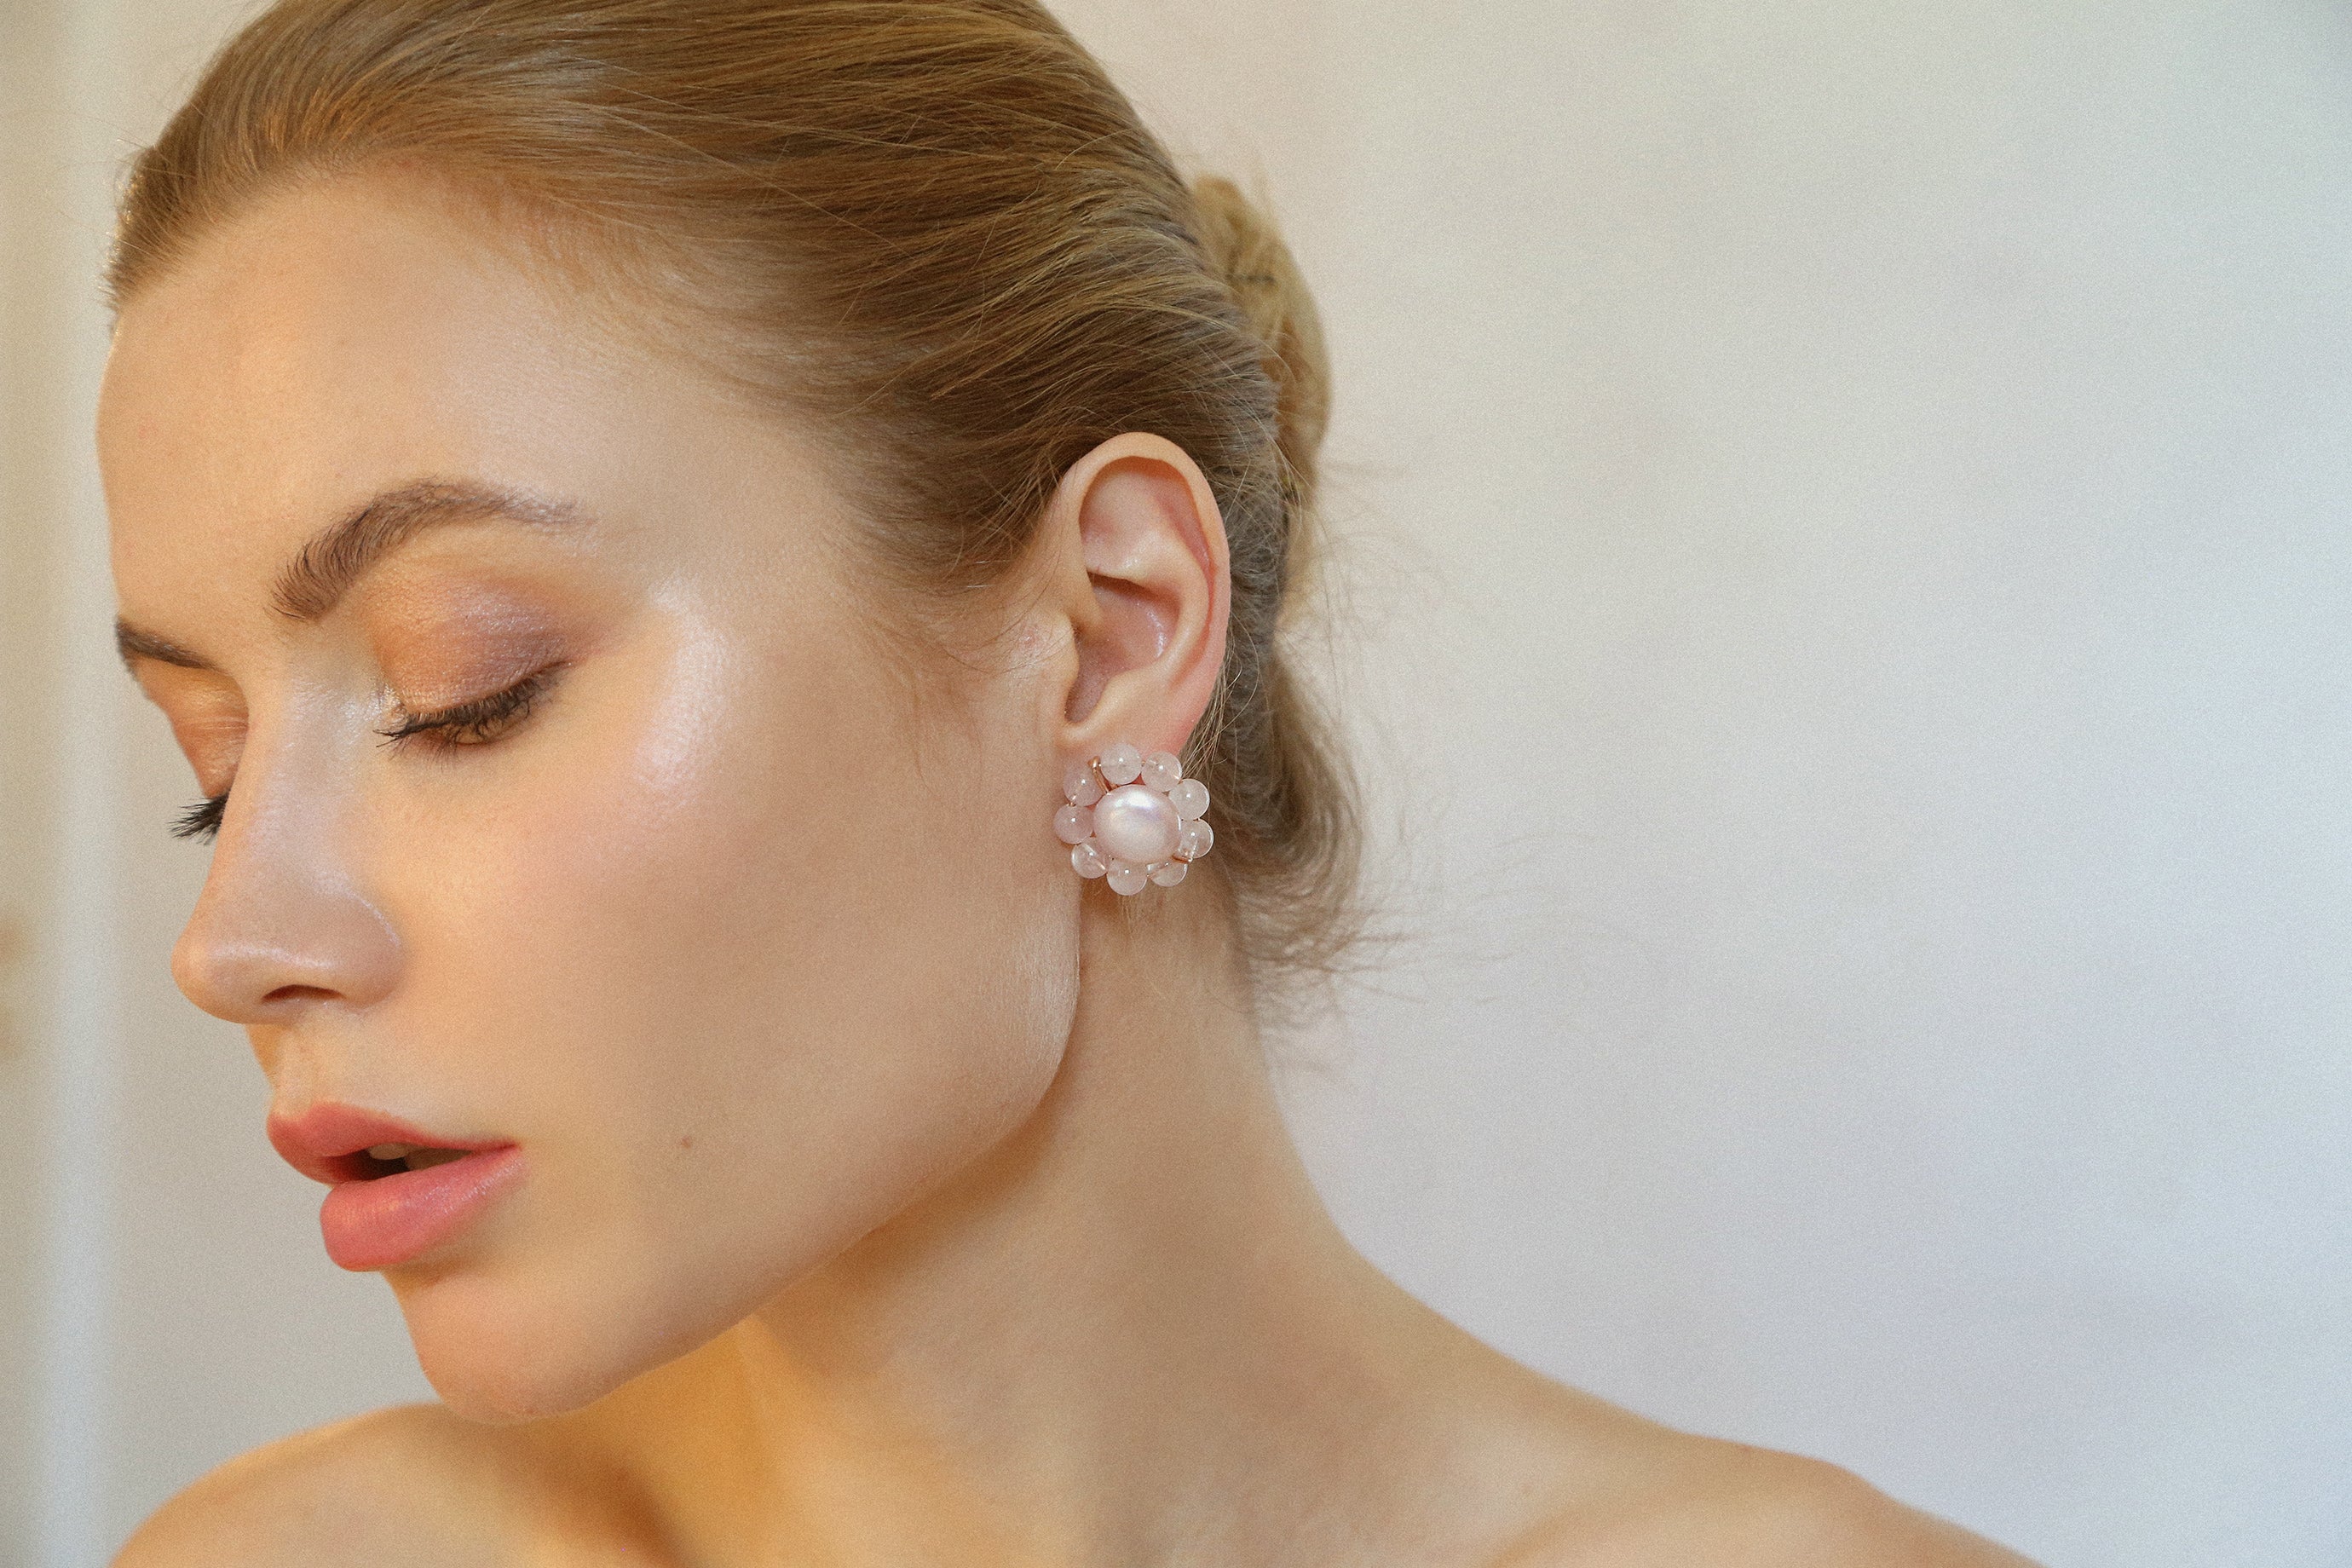 Rosetta Earring - Pearl & Rose Quartz Earrings TARBAY   